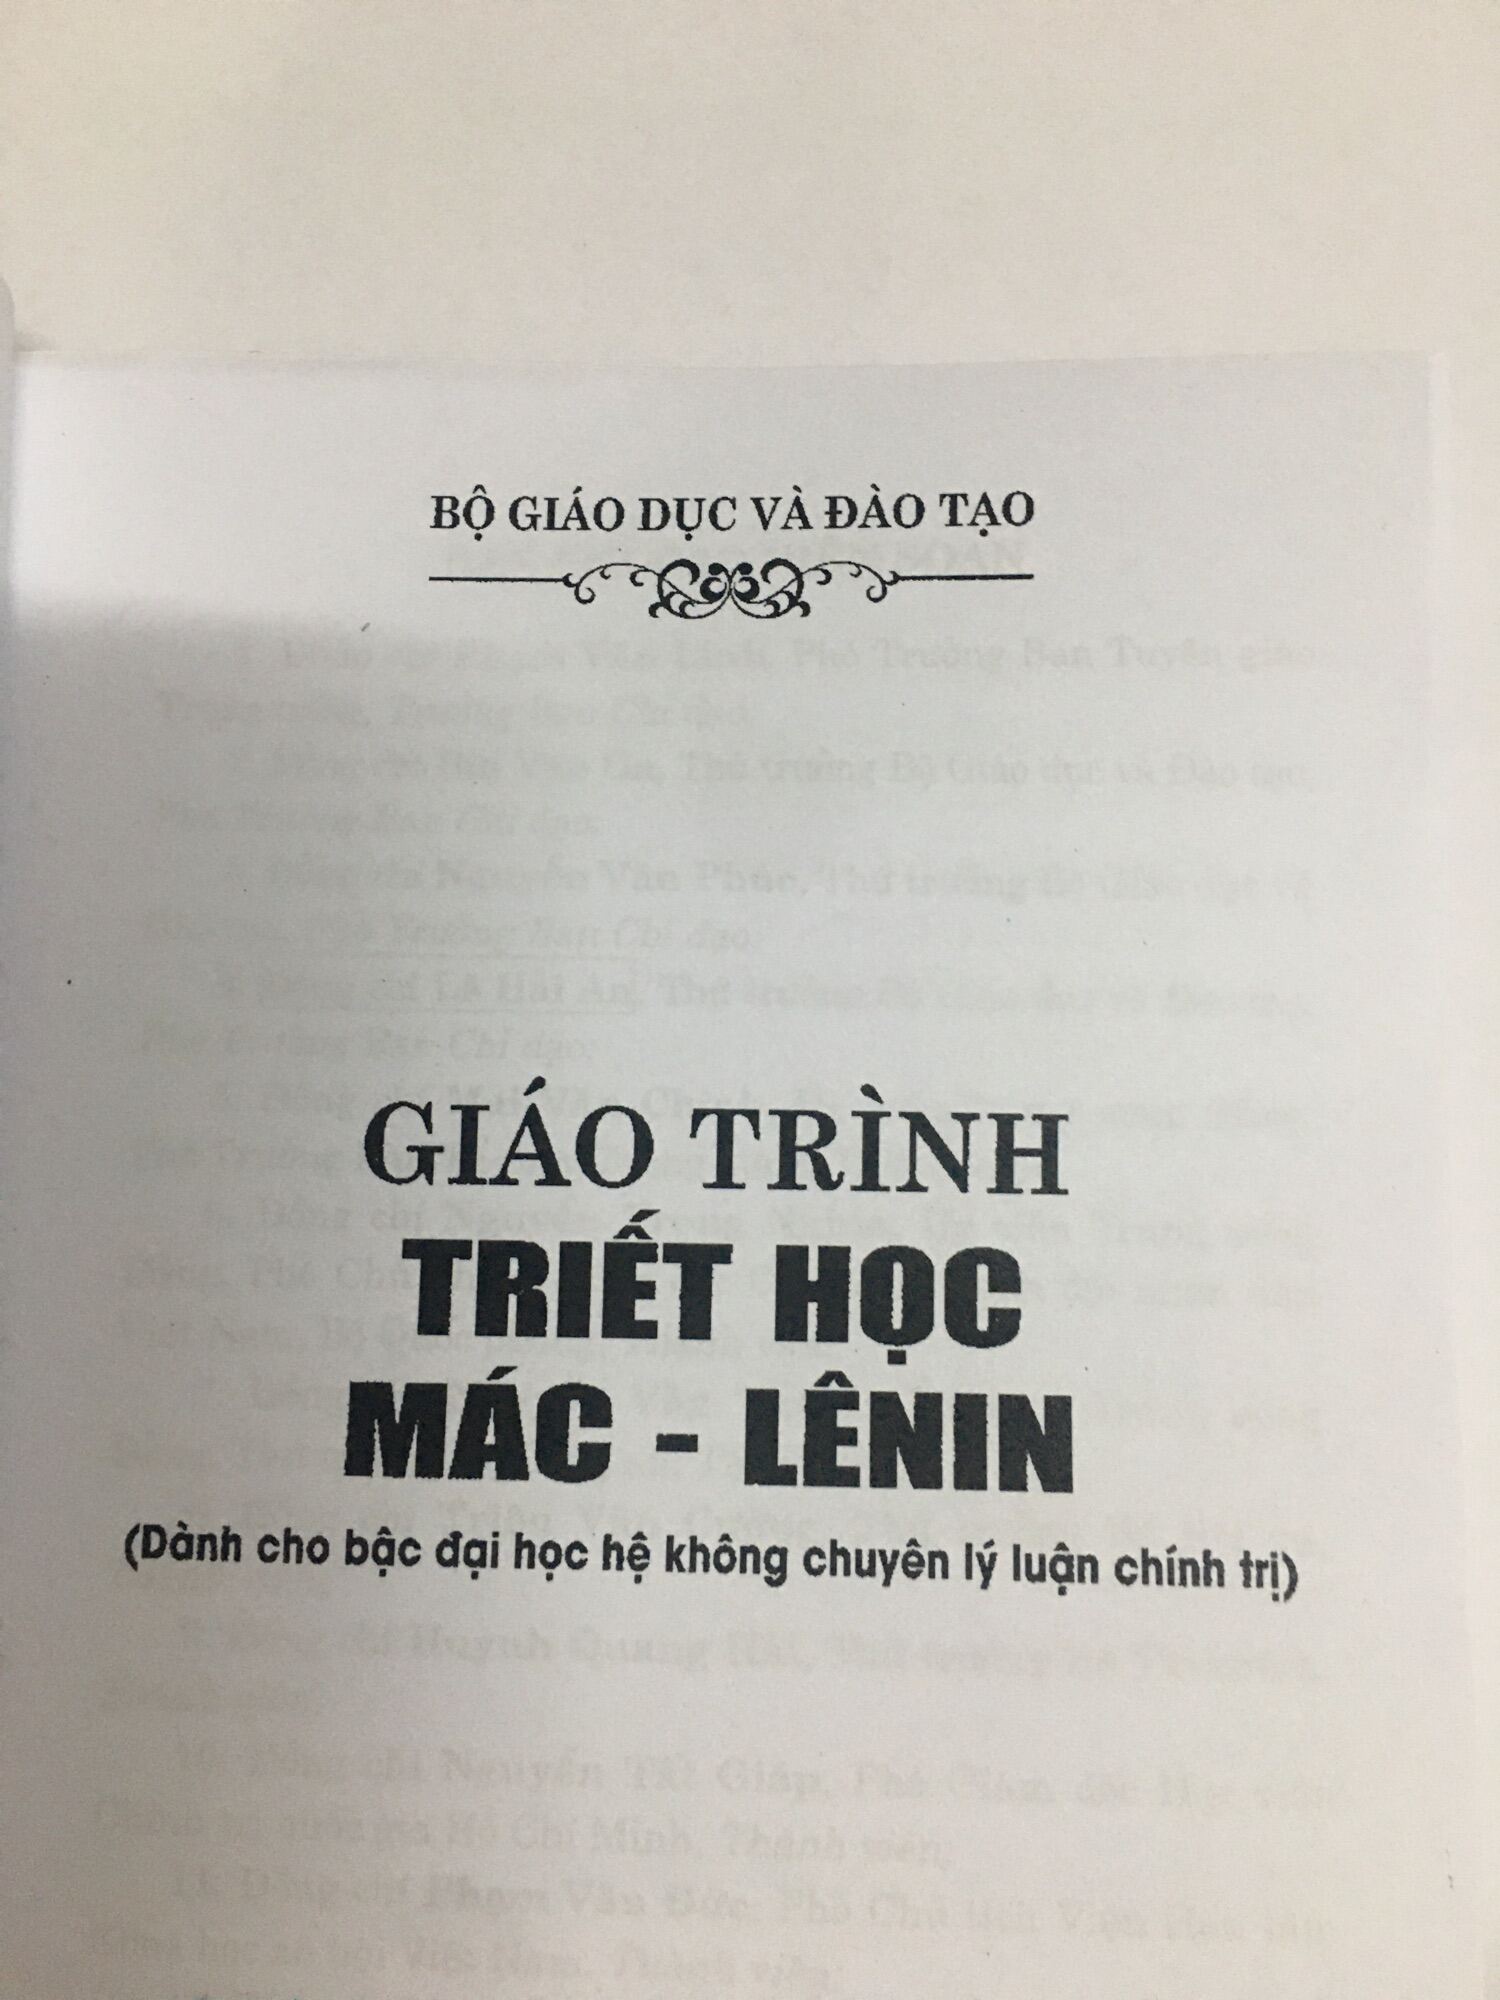 GT triết học Mác - Lênin (bản 2021)